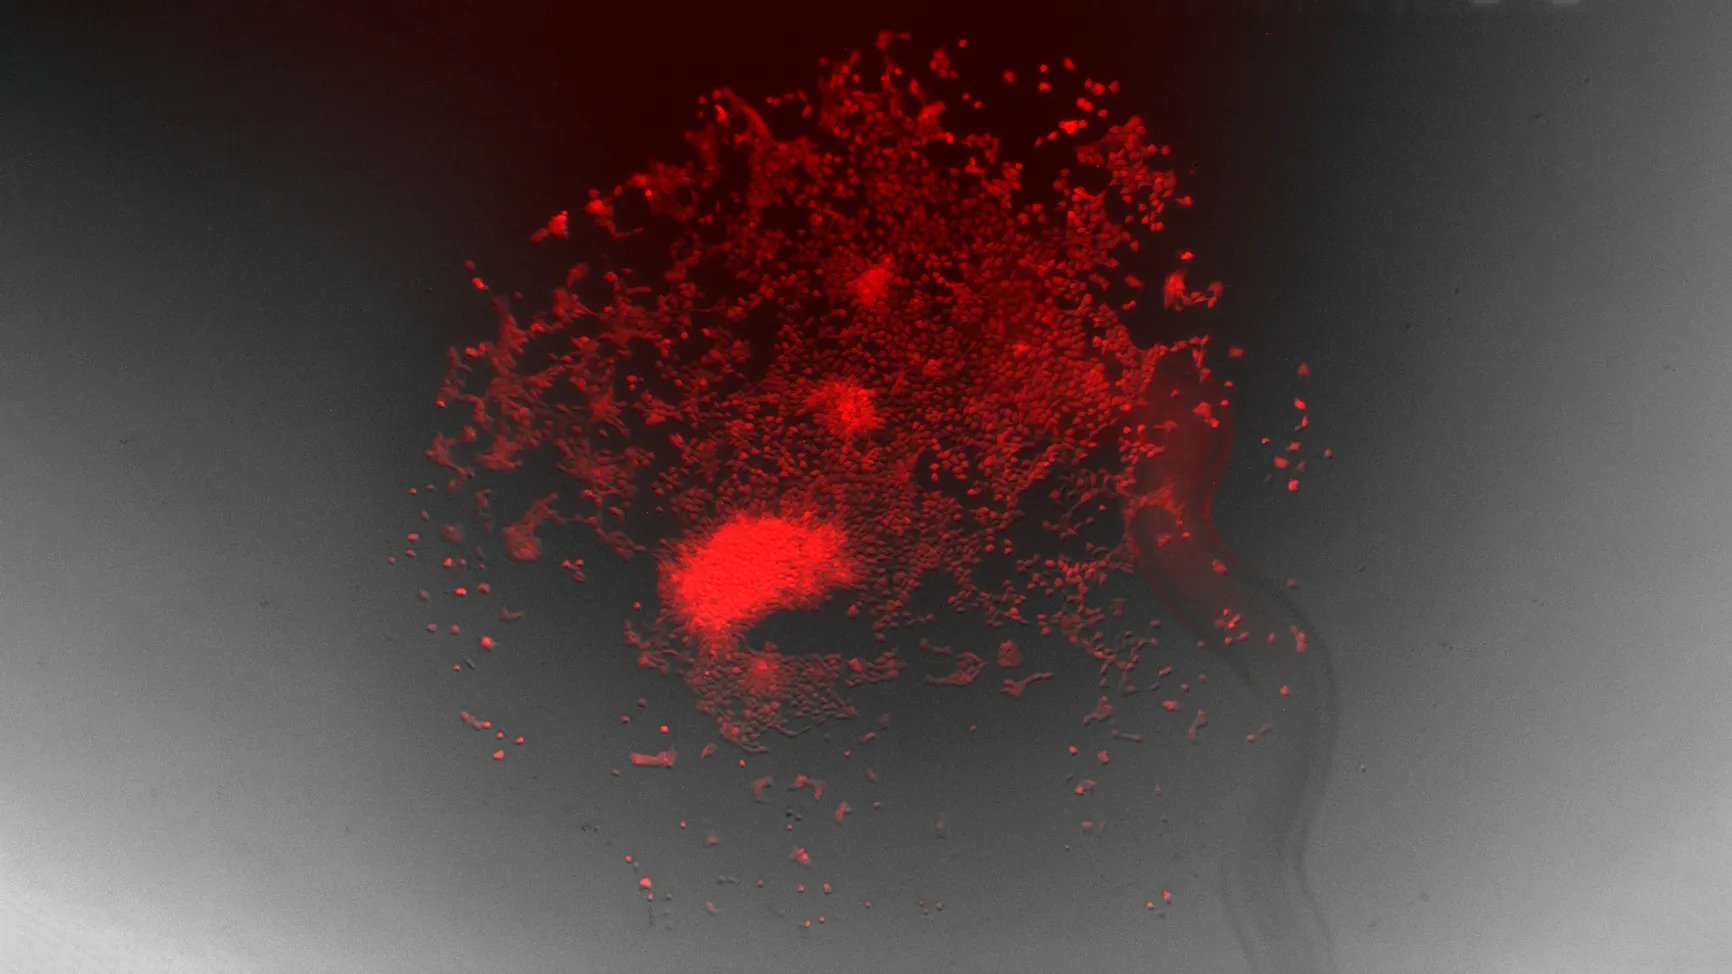 illuminated blood celll